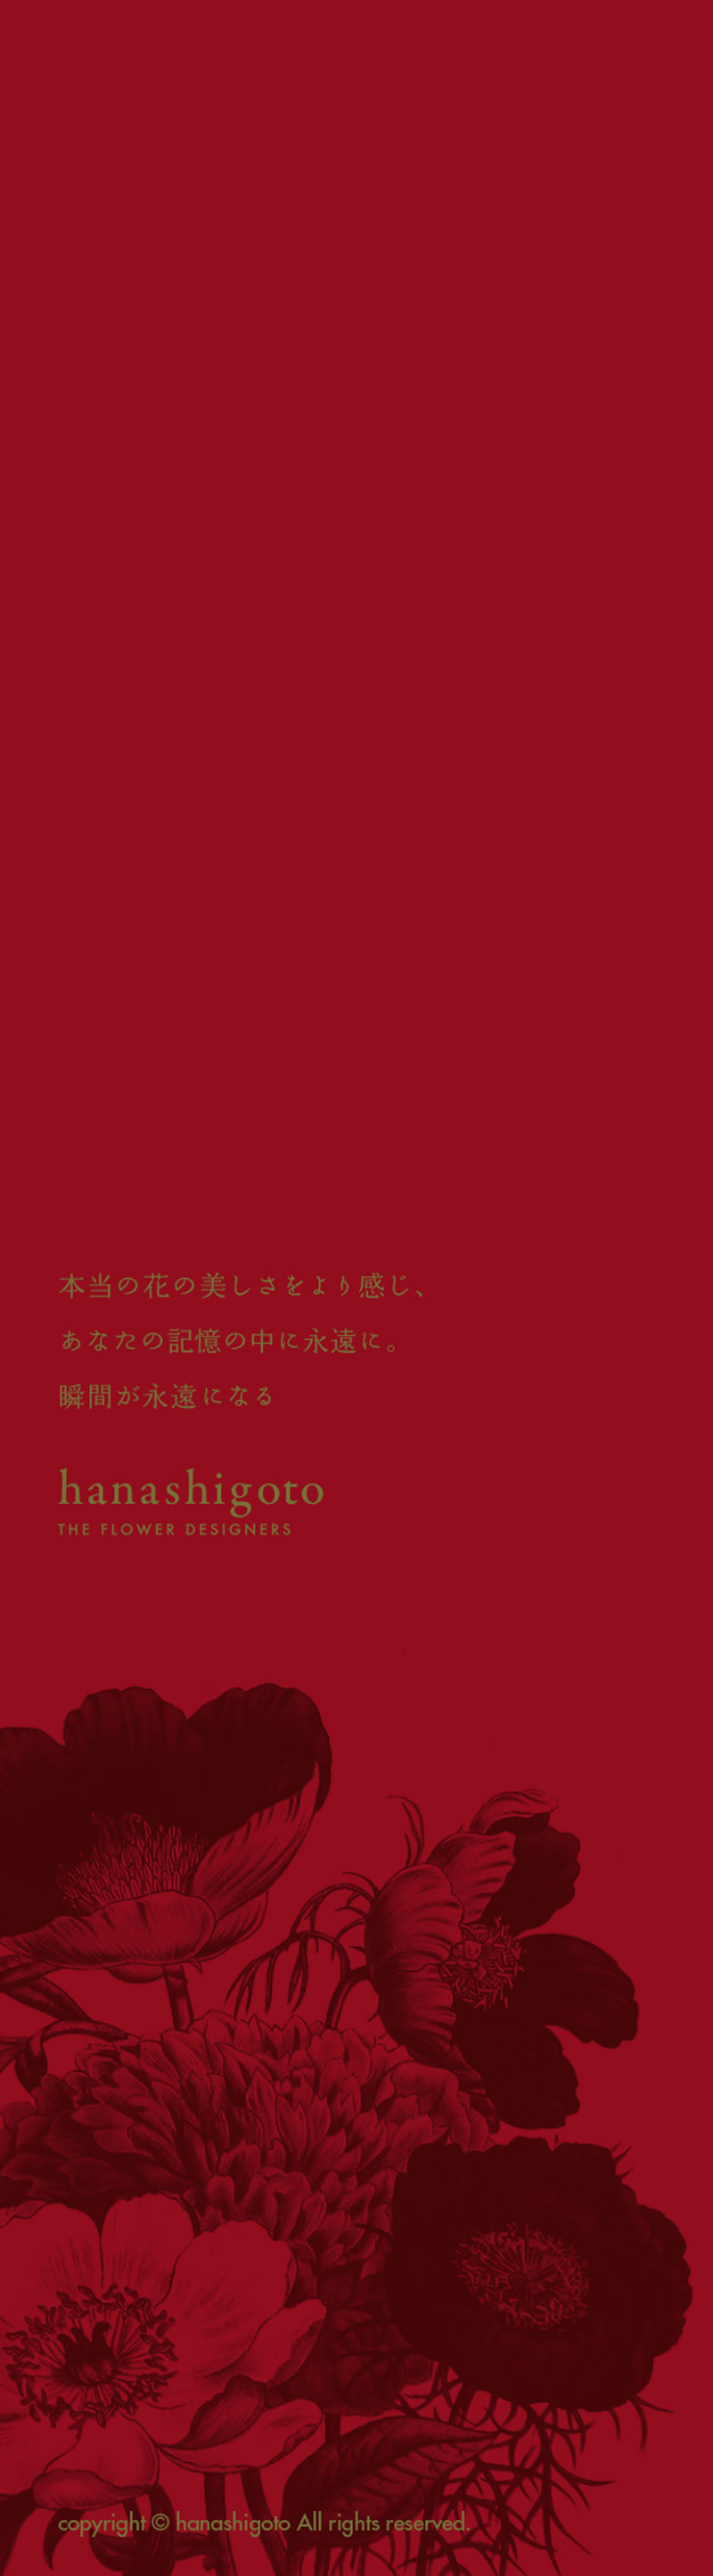 静岡富士富士宮プリザーブドフラワーショップ スクールハナシゴト-hanashigoto-